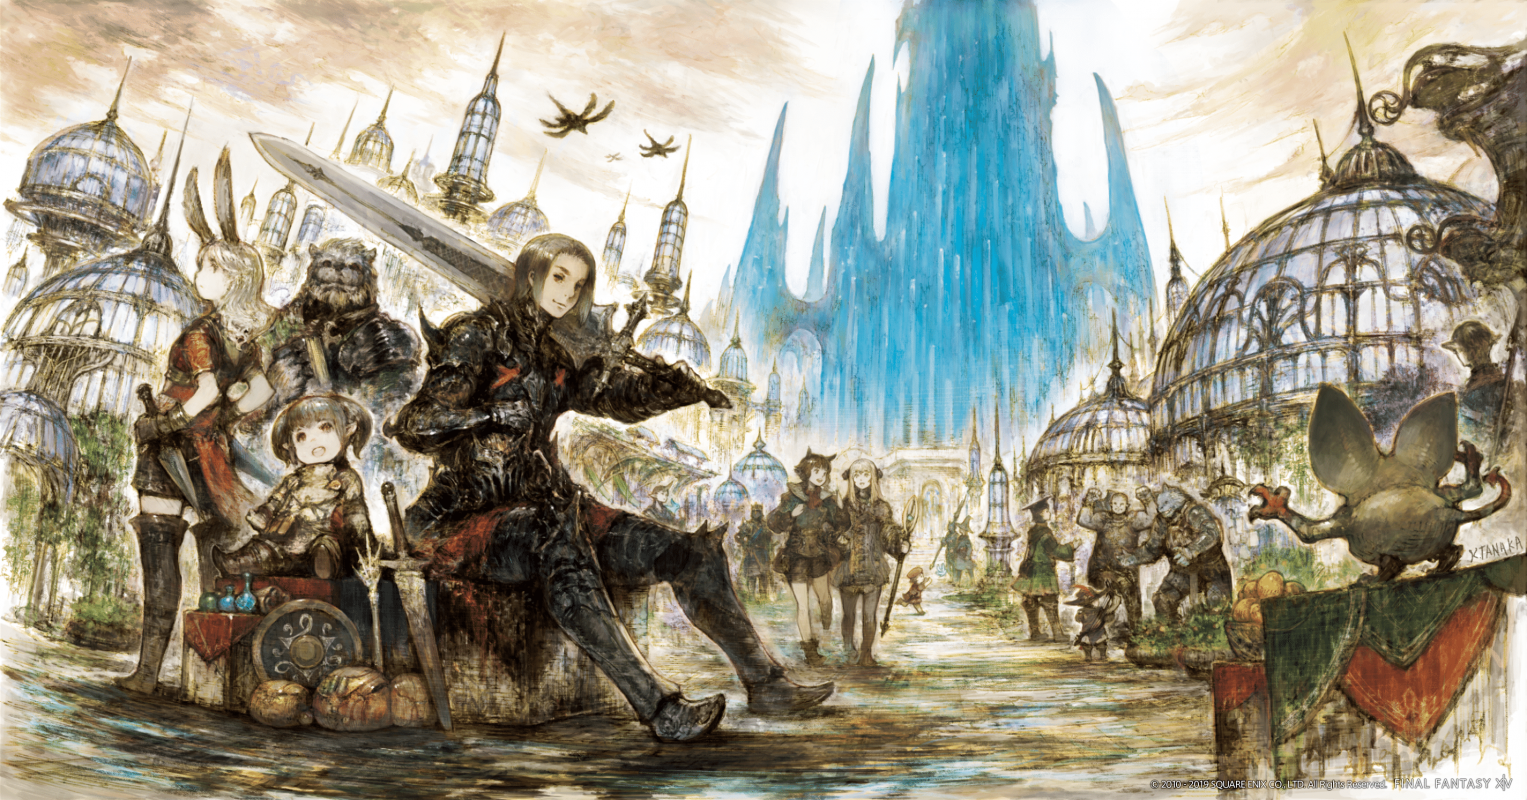 Final Fantasy XIV Art